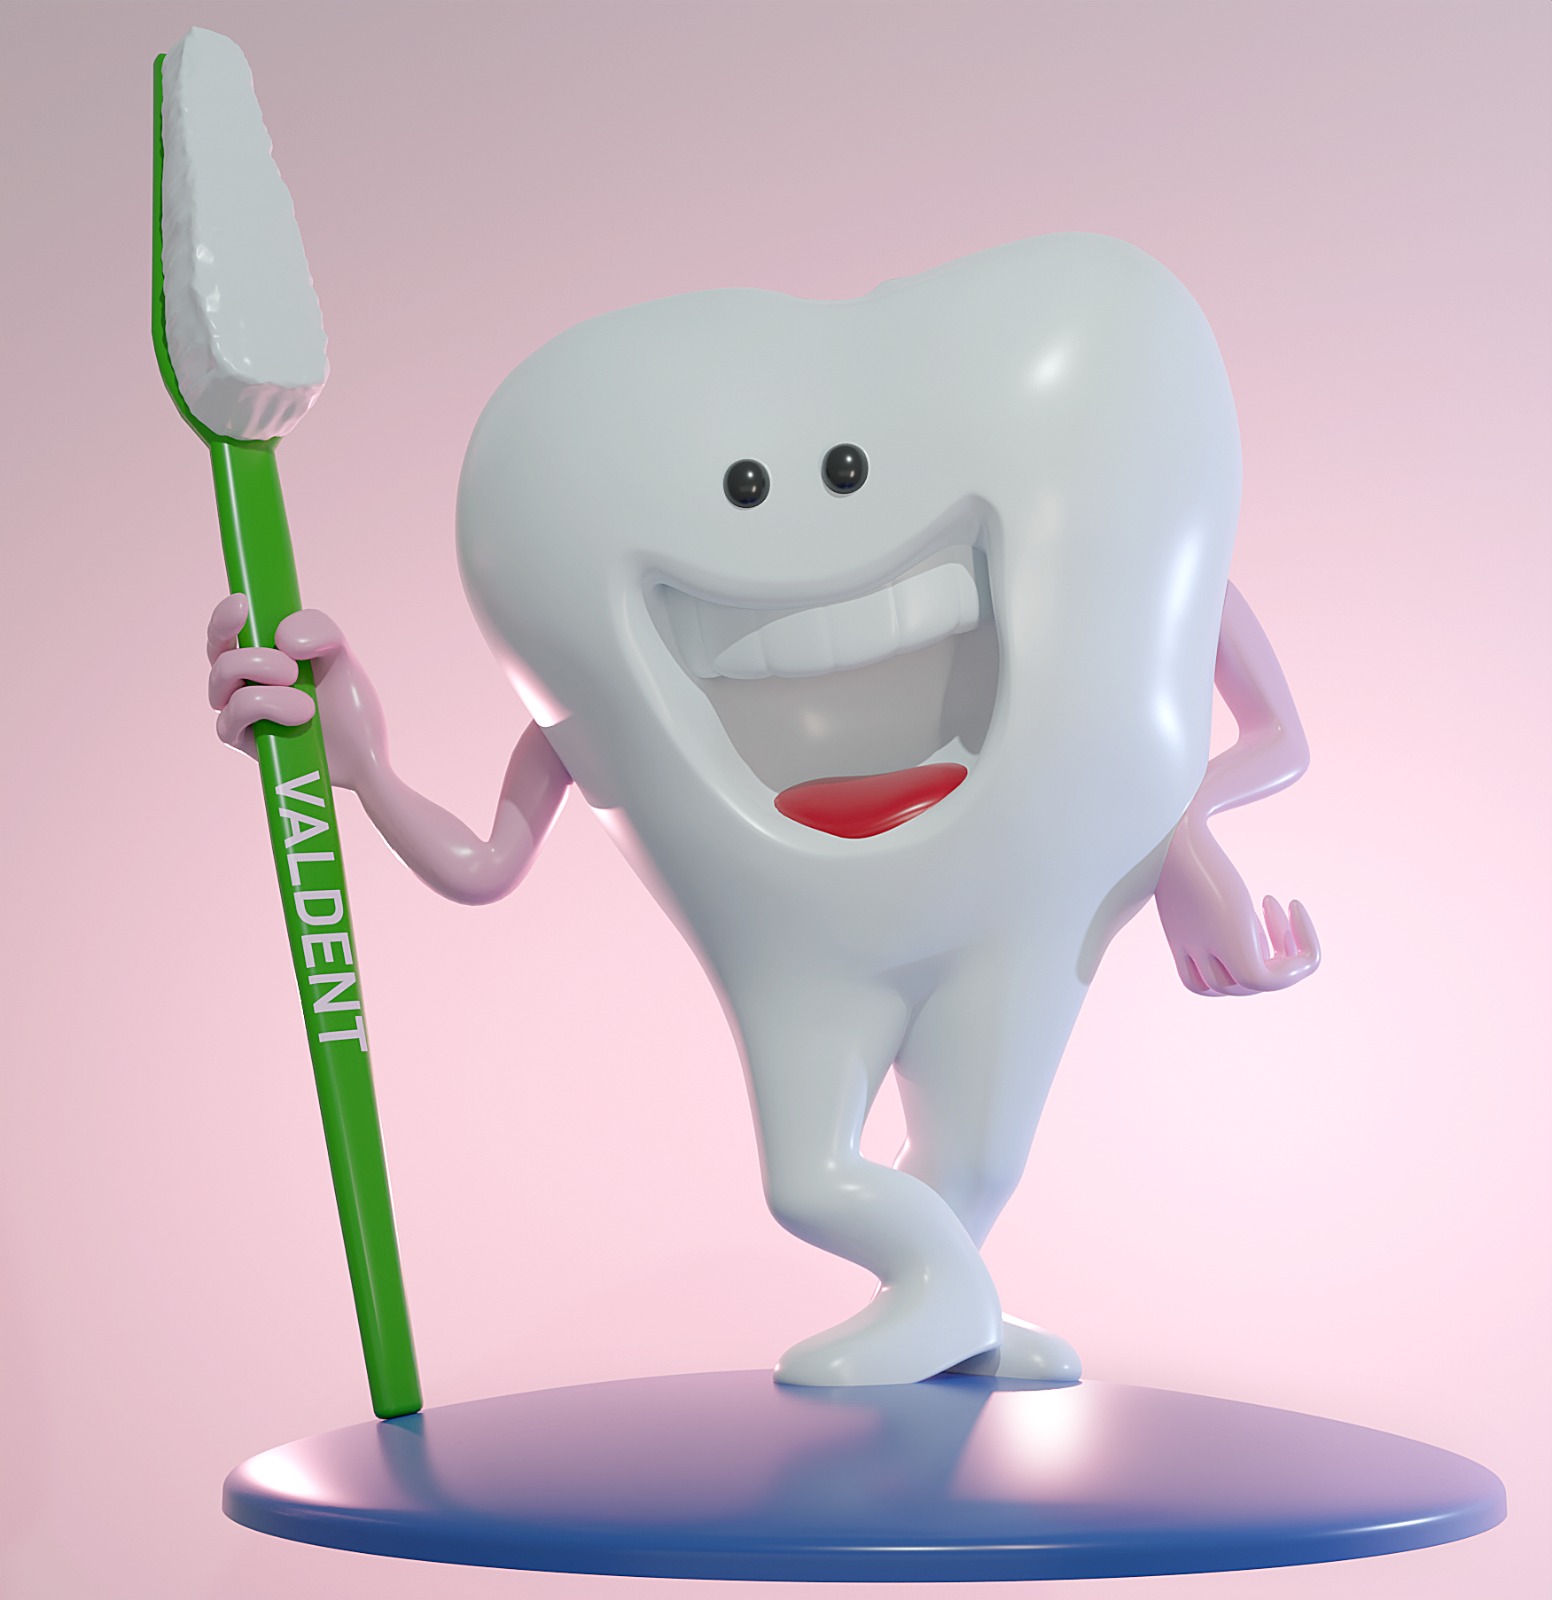 VALDENT - Le faccette dentali estetiche